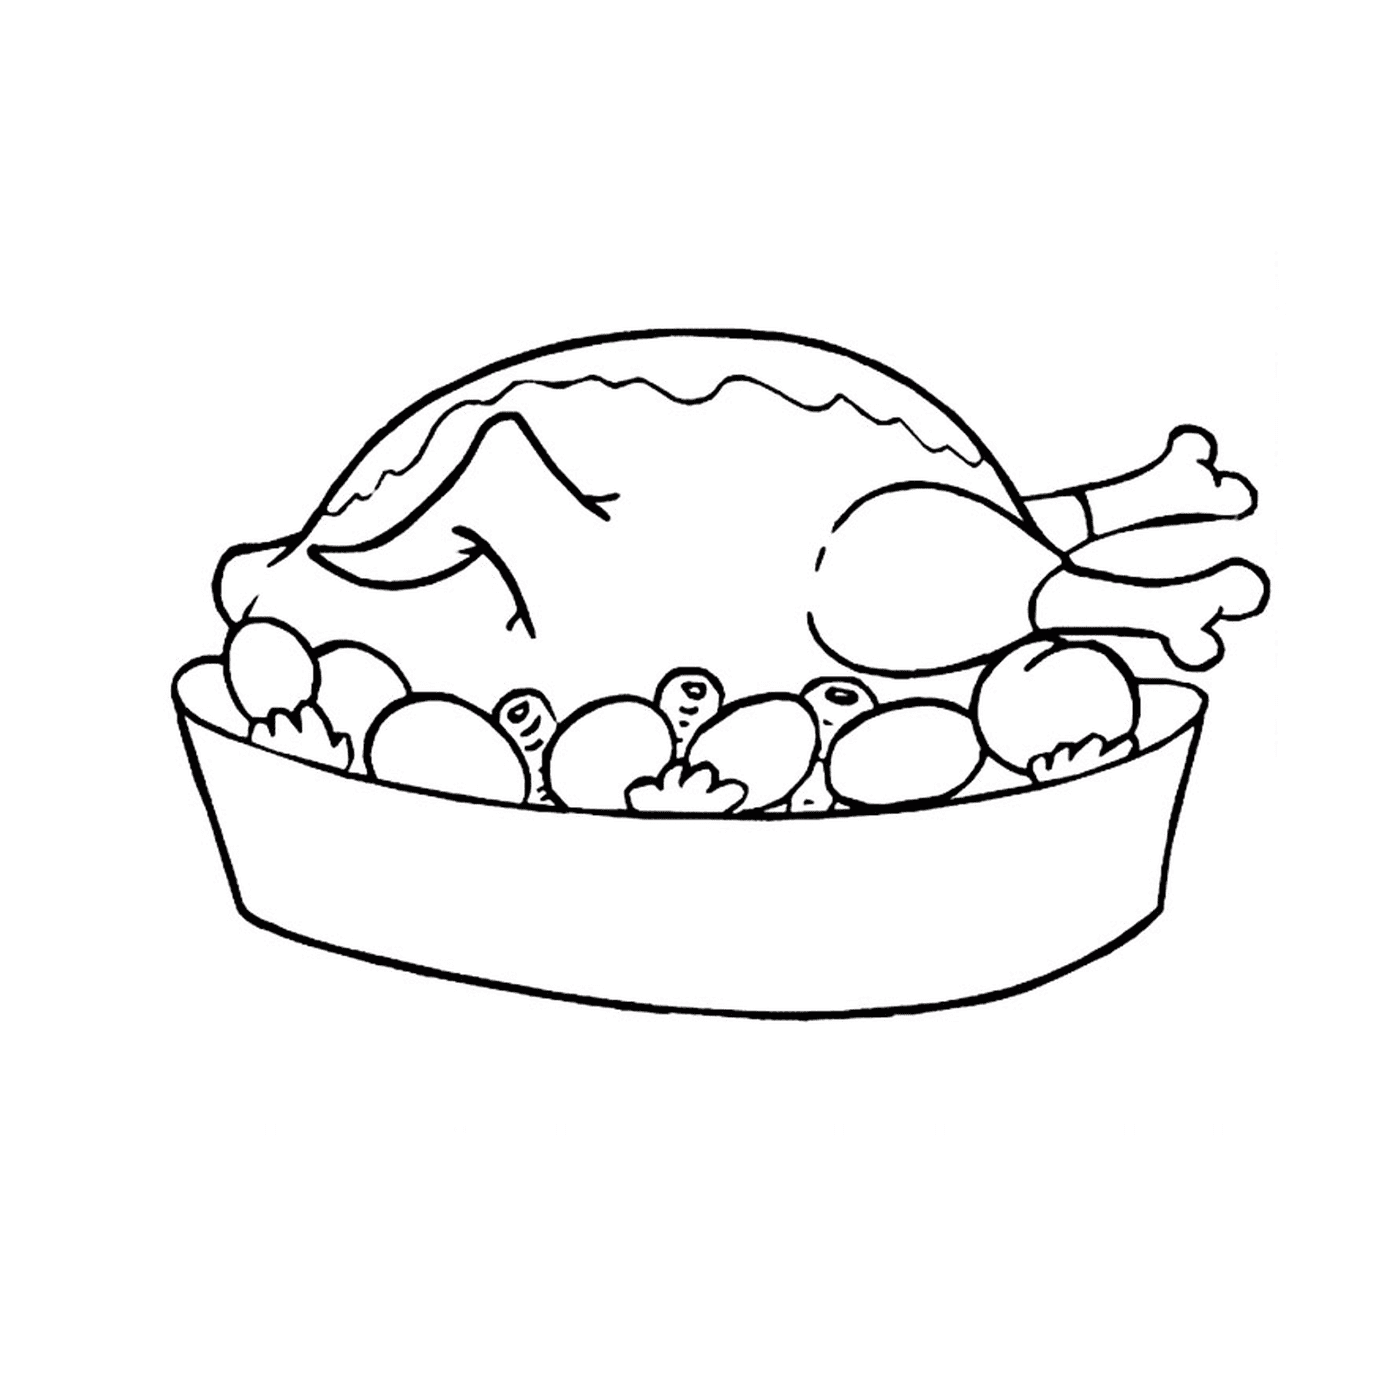  A chicken in a bowl 